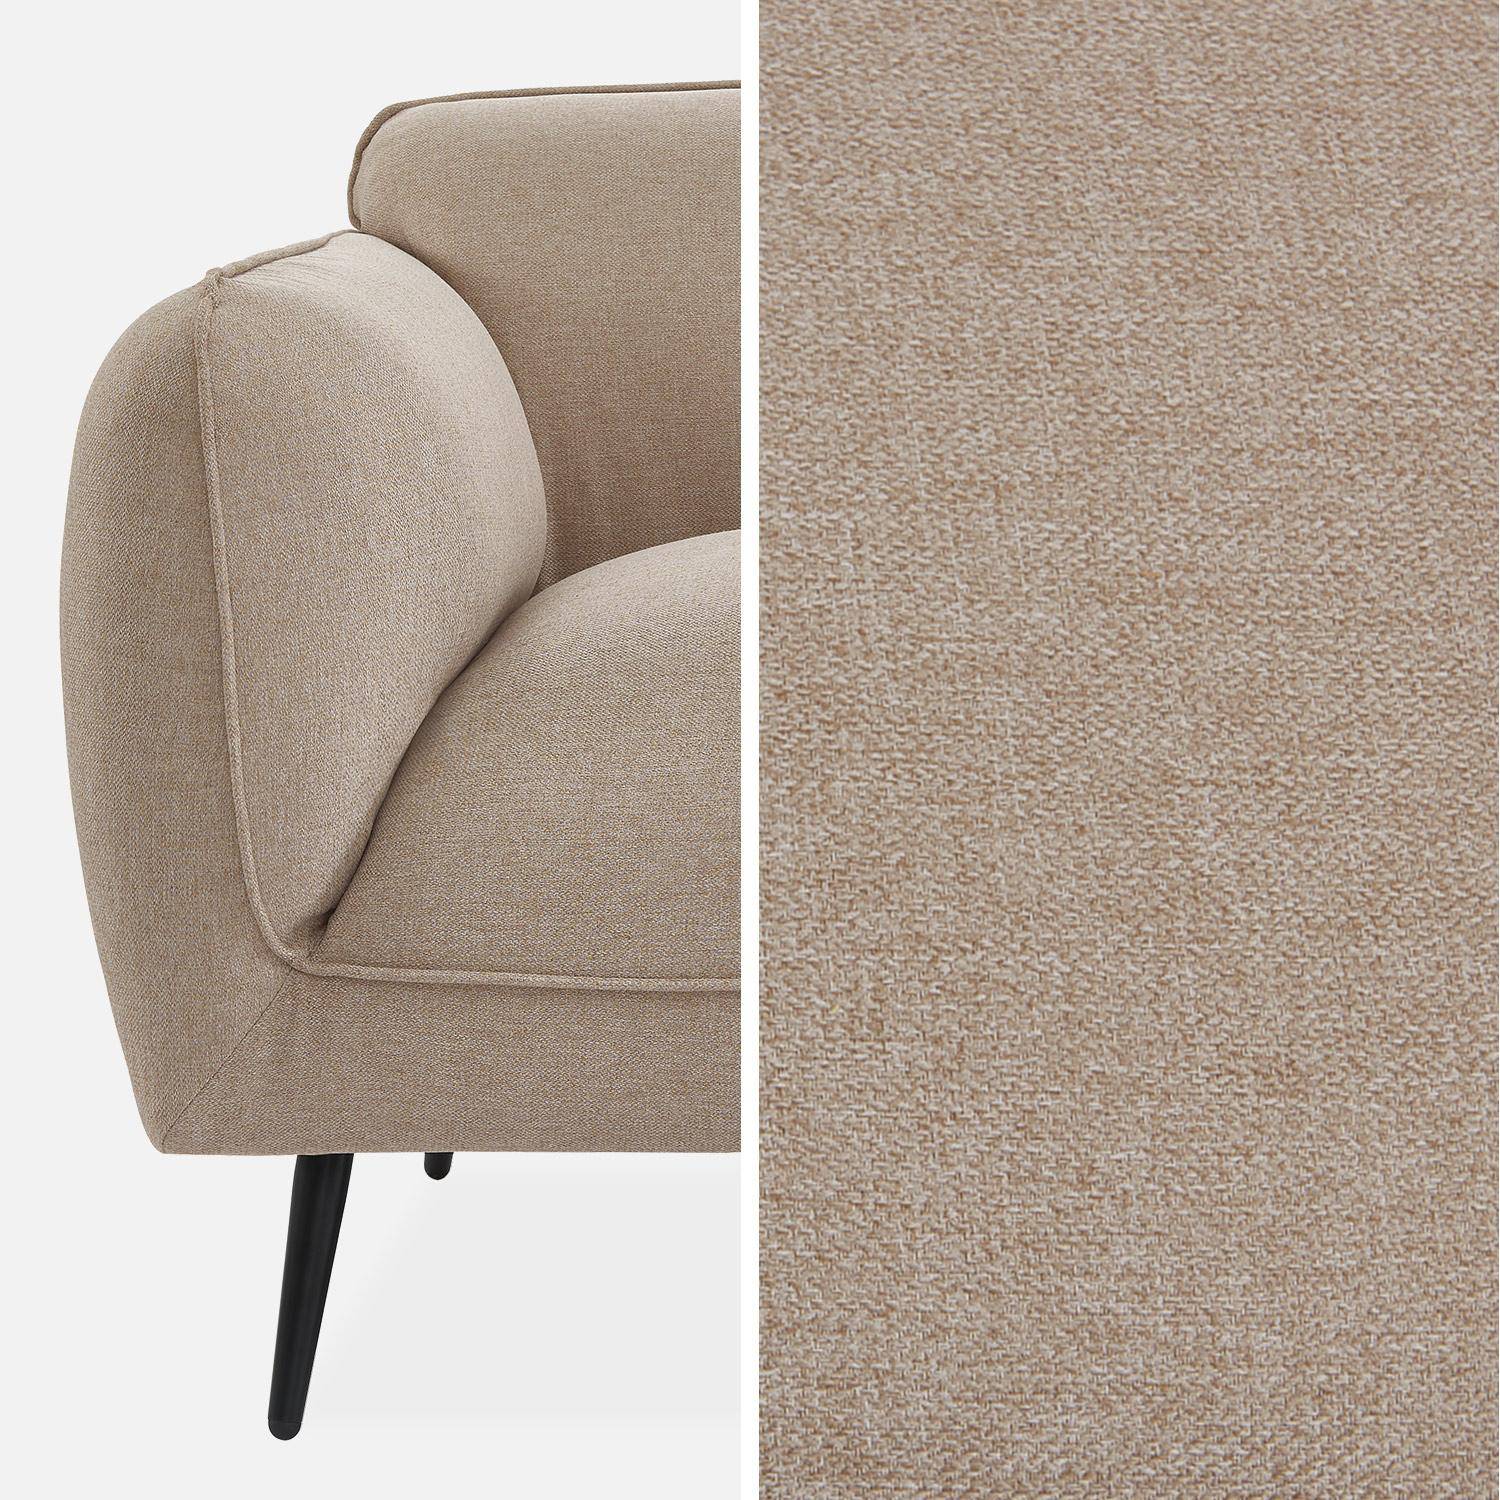 3-Sitzer-Sofa mit Stoffbezug in beige und schwarzen Metallfüßen - Soft,sweeek,Photo6